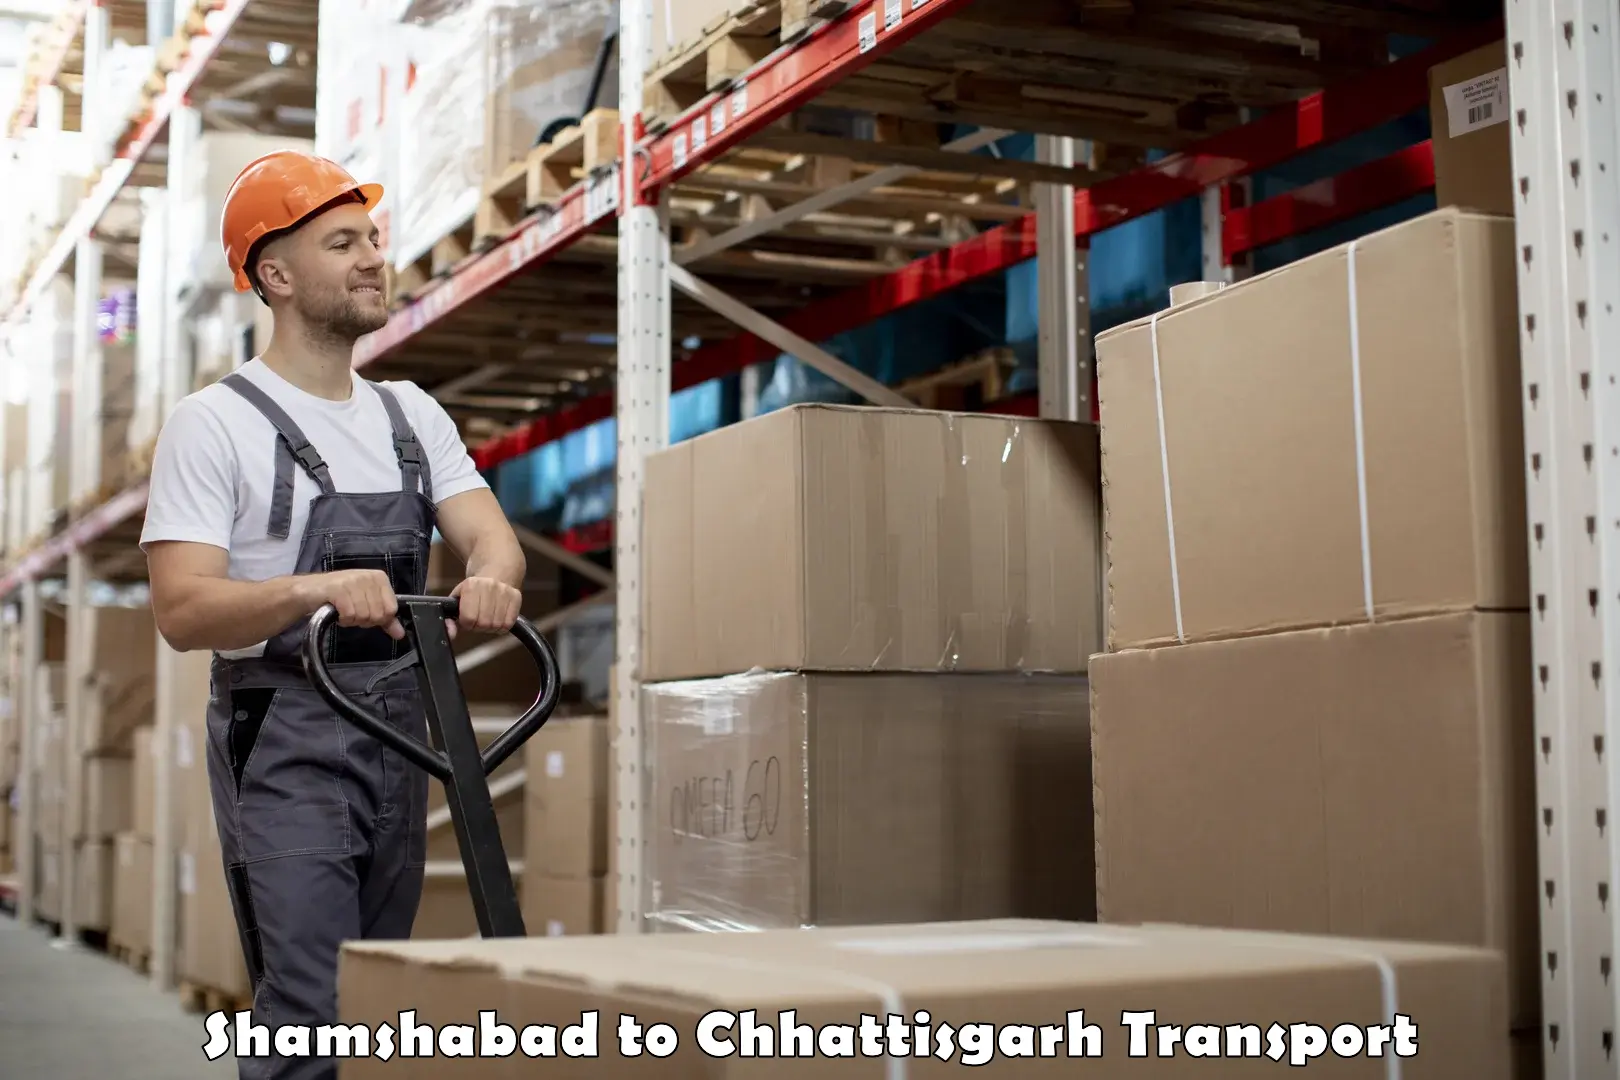 Delivery service Shamshabad to Patna Chhattisgarh